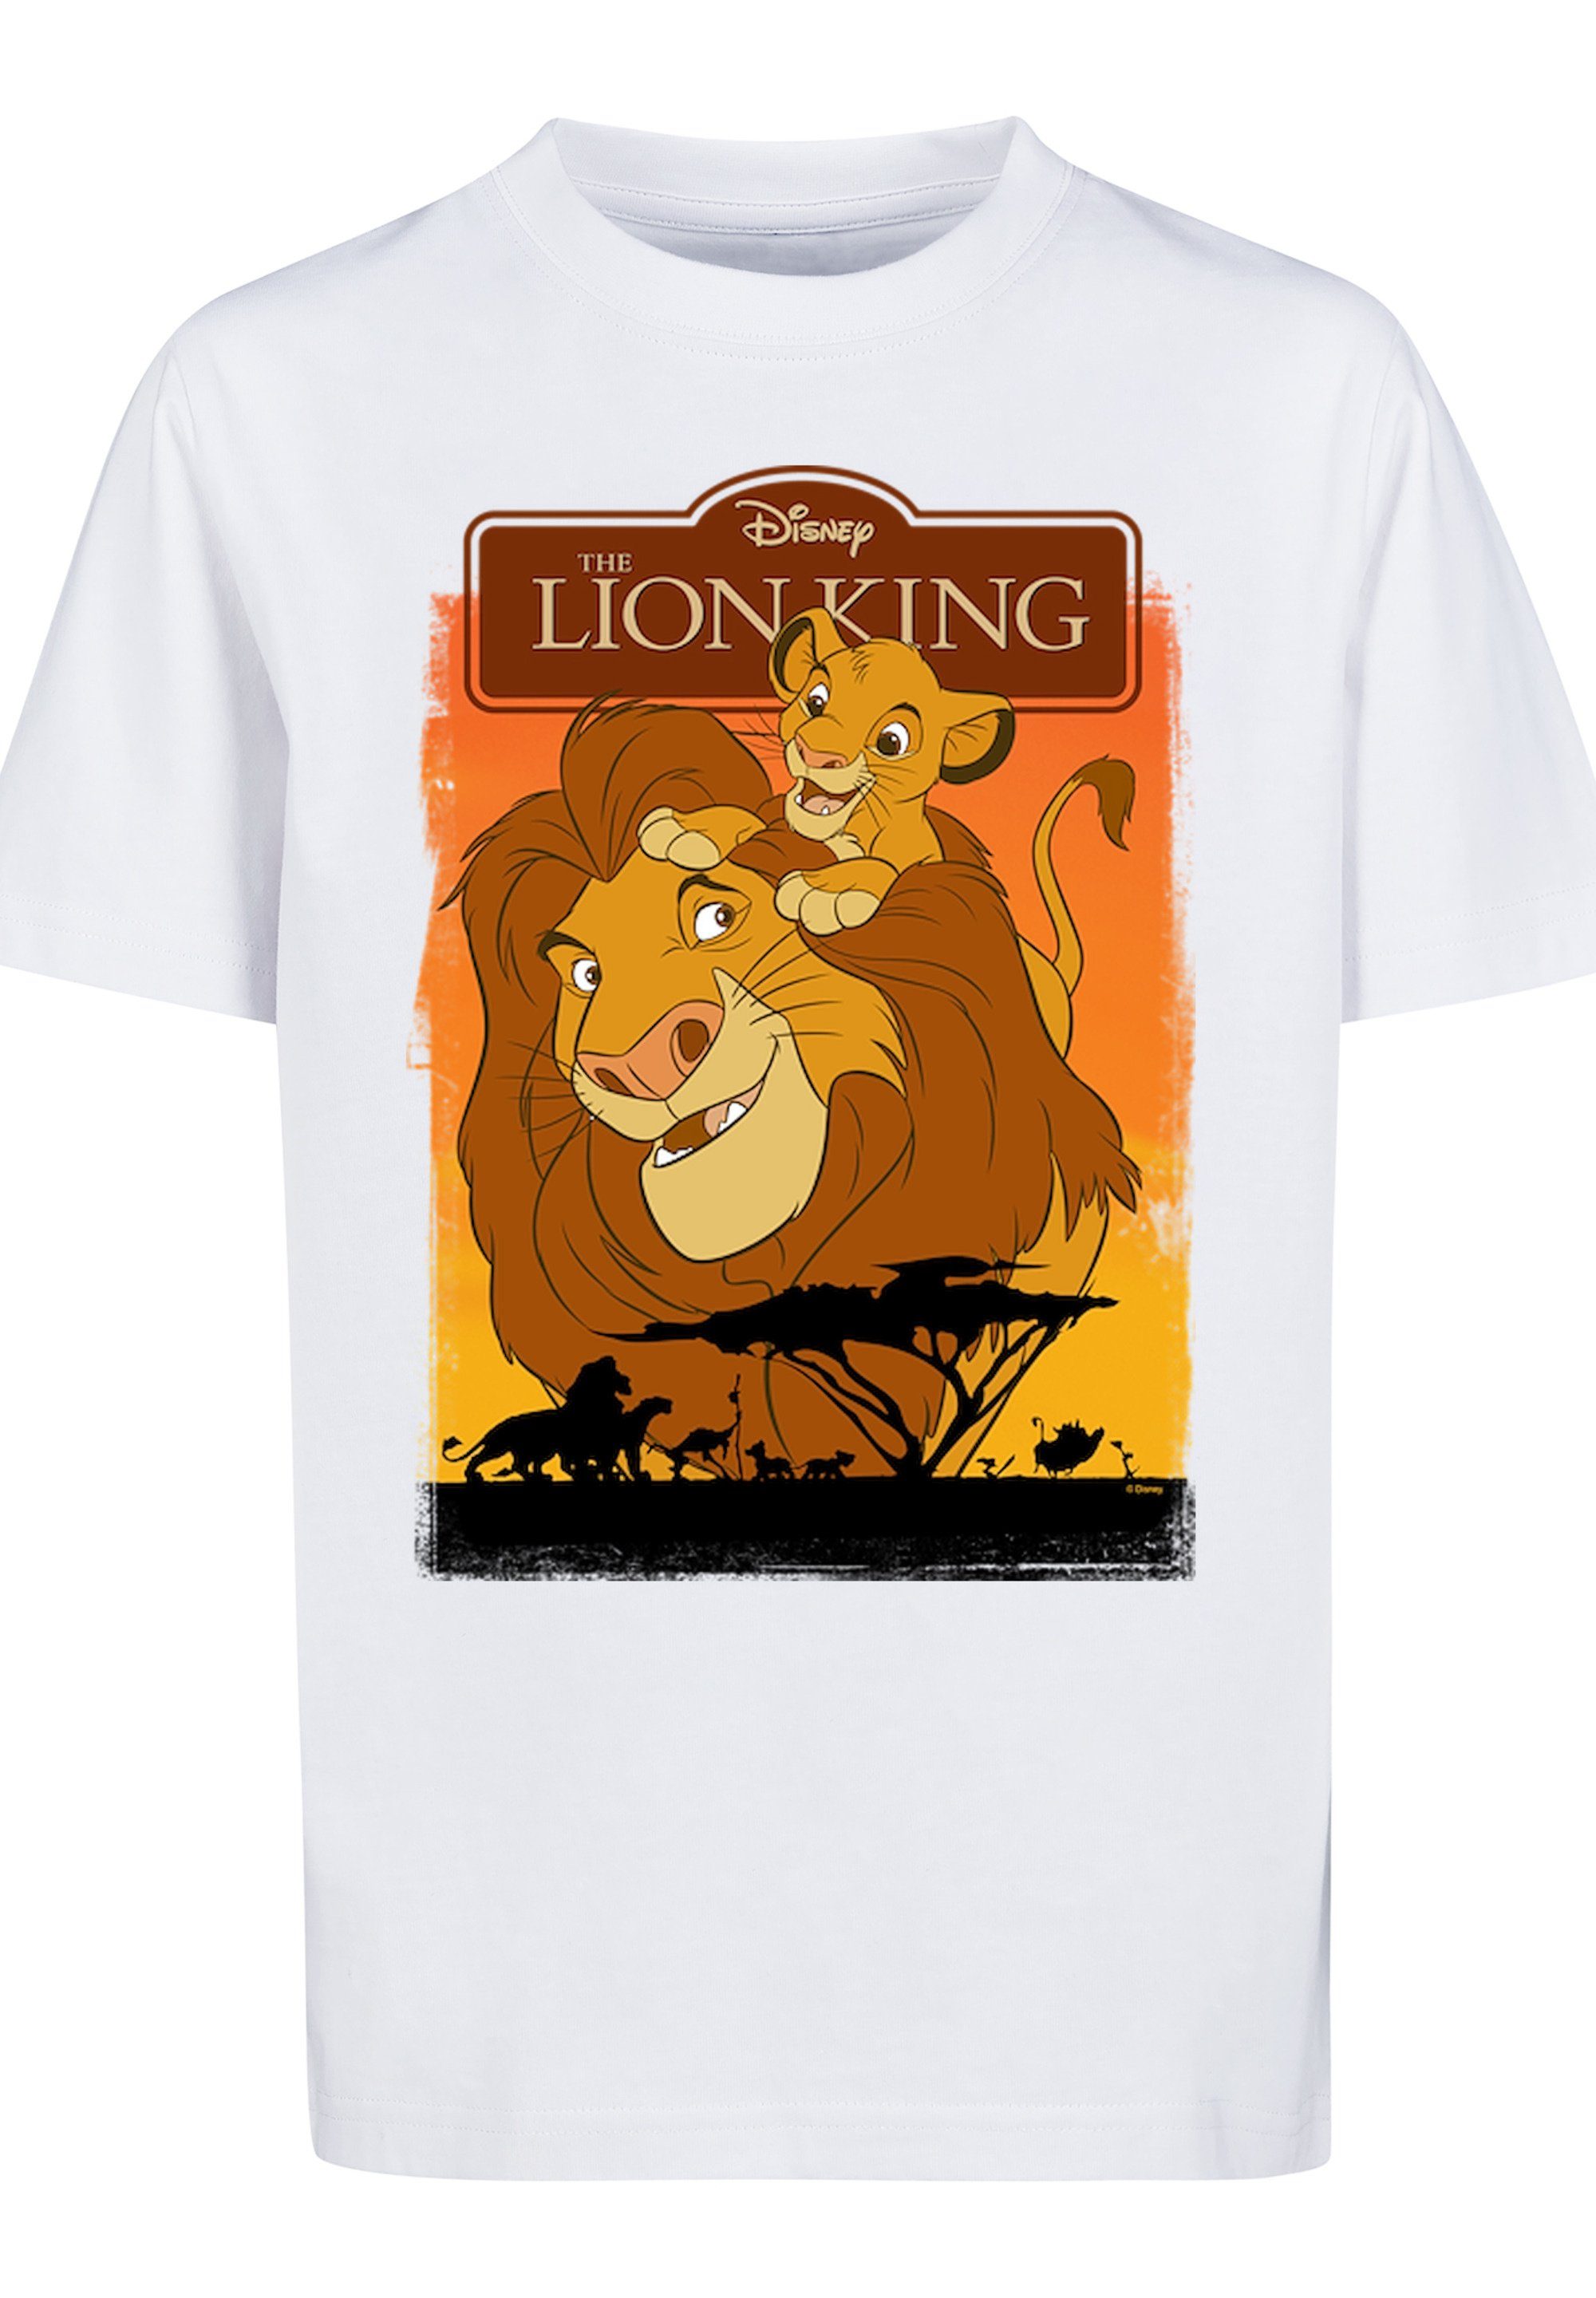 F4NT4STIC Löwen und Simba Print T-Shirt Mufasa der König